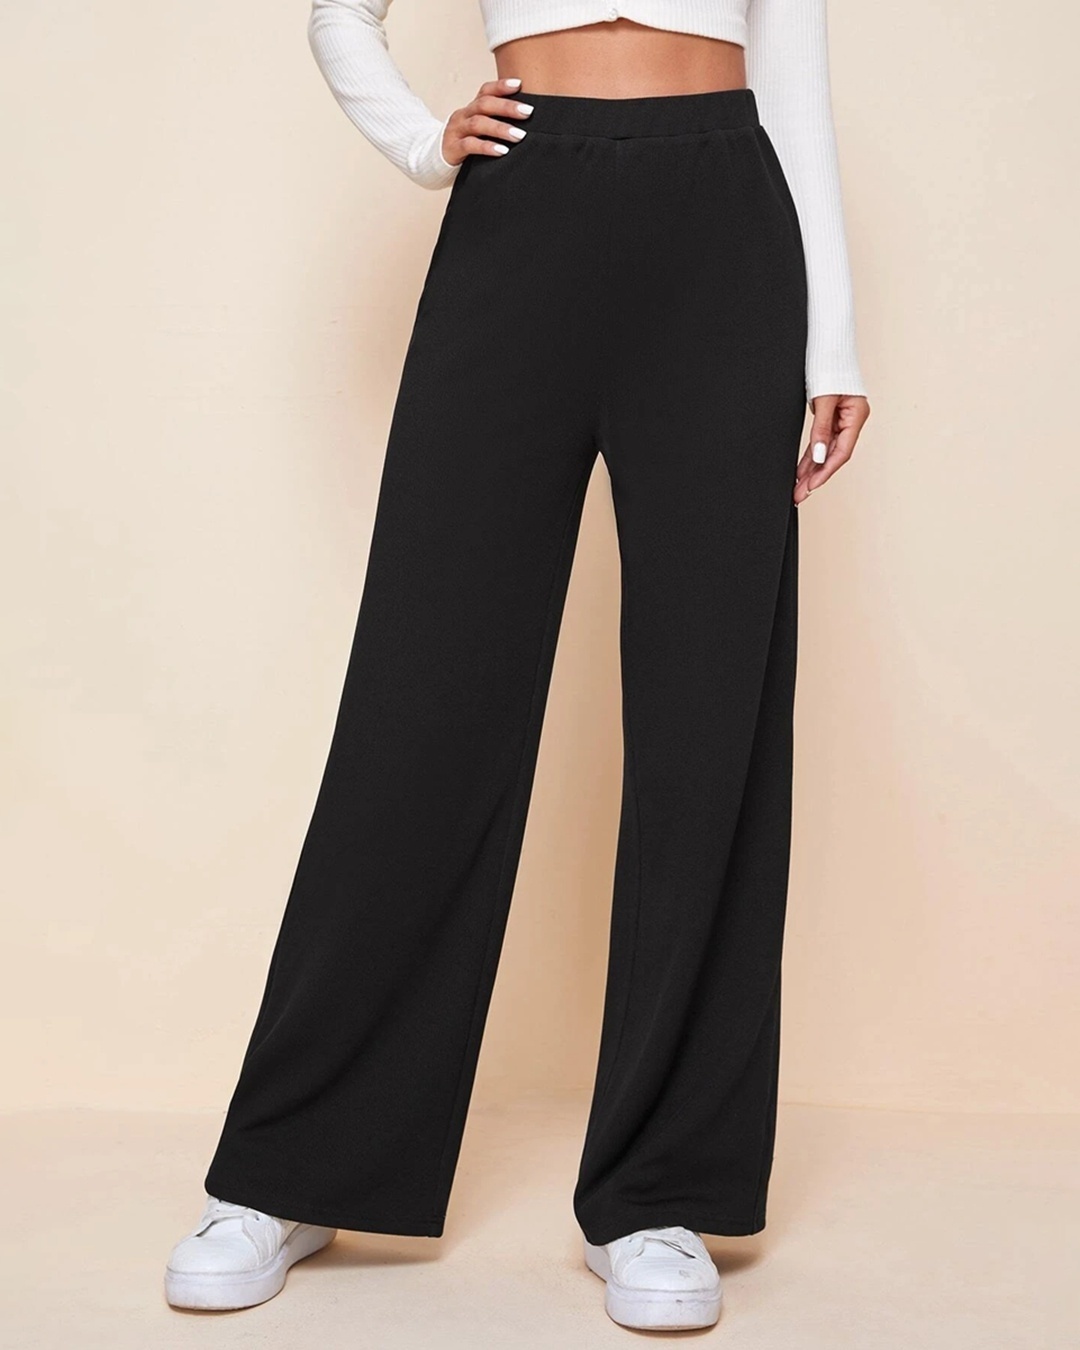 Buy Women's Black Oversized Wide Leg Korean Pants Online at Bewakoof